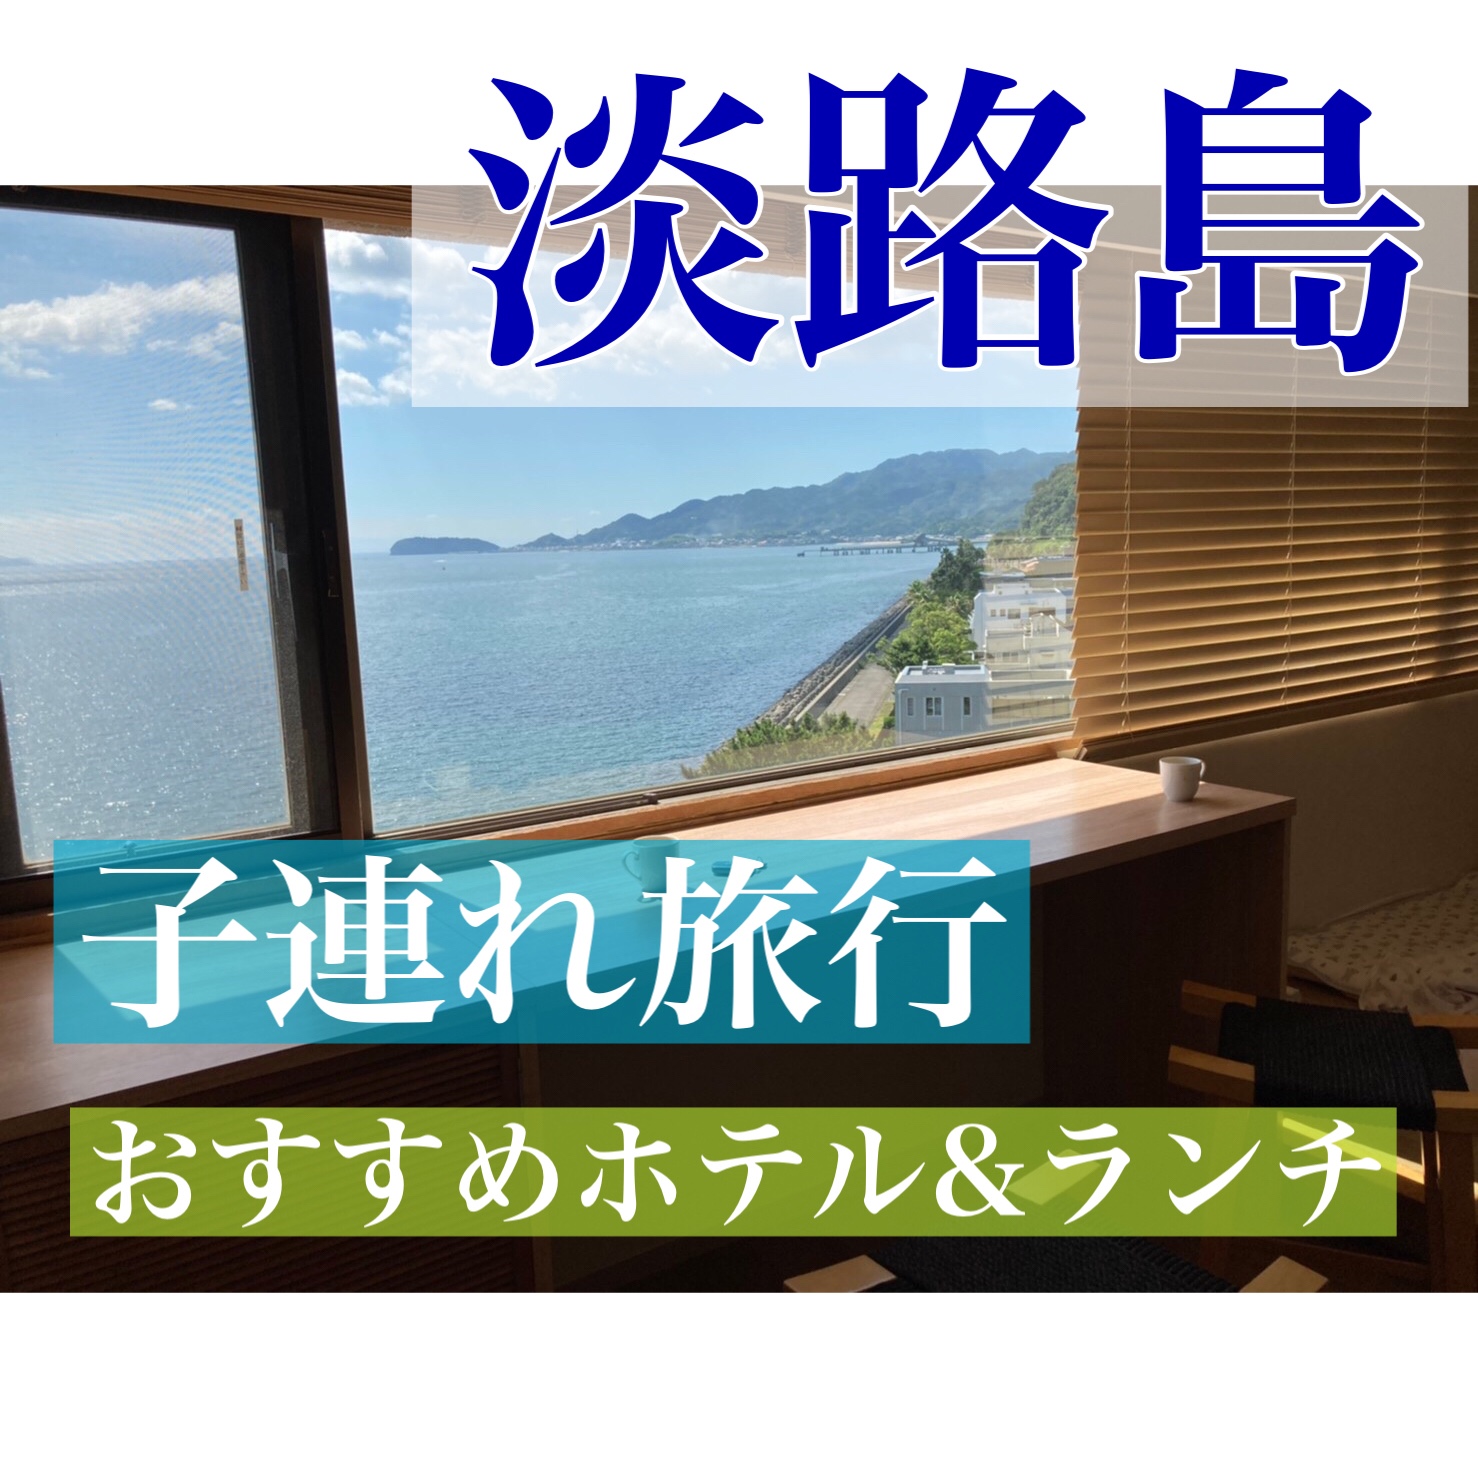 淡路島 子連れ旅行お泊まりスケジュール おすすめホテル ランチ もふたろ自己実現ブログ